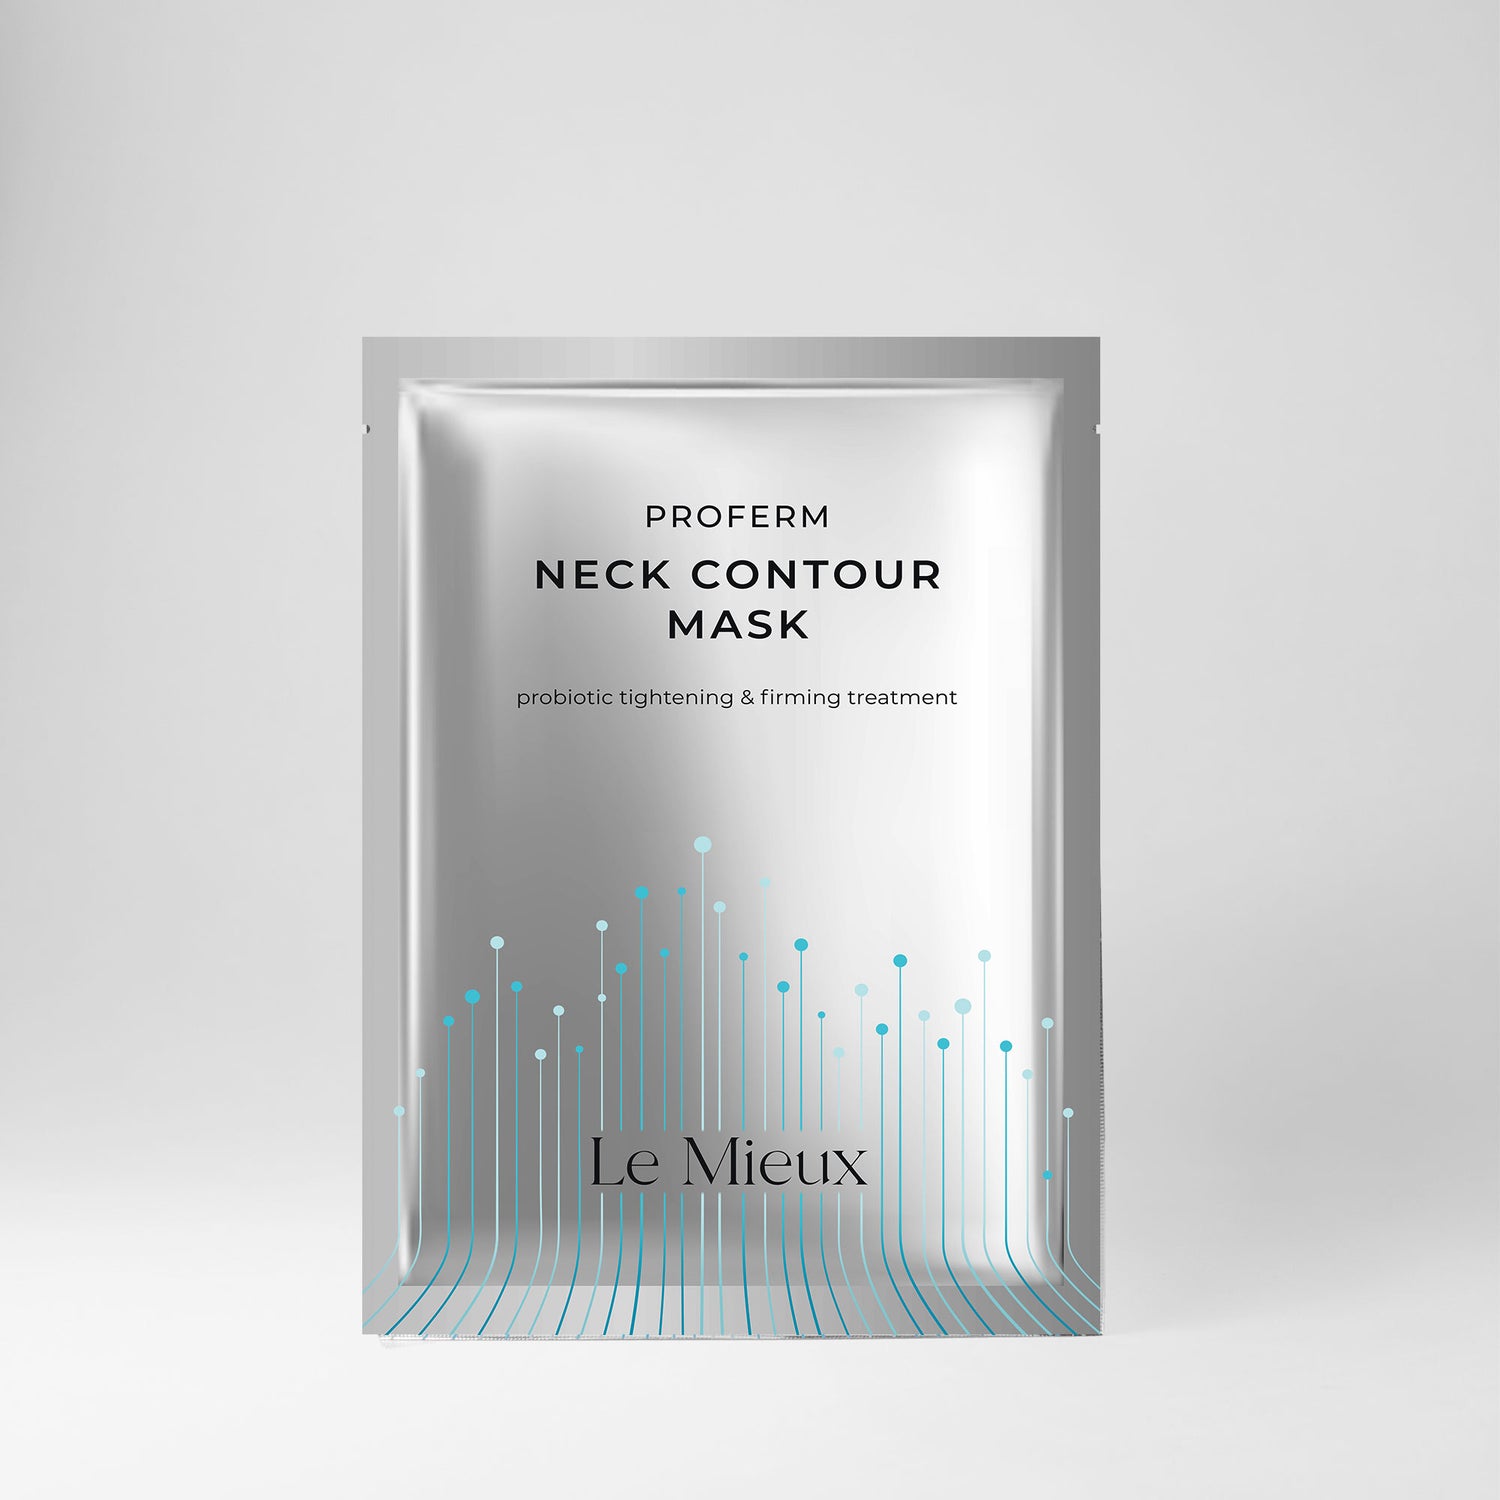  ProFerm Neck Contour Mask from Le Mieux Skincare - 1